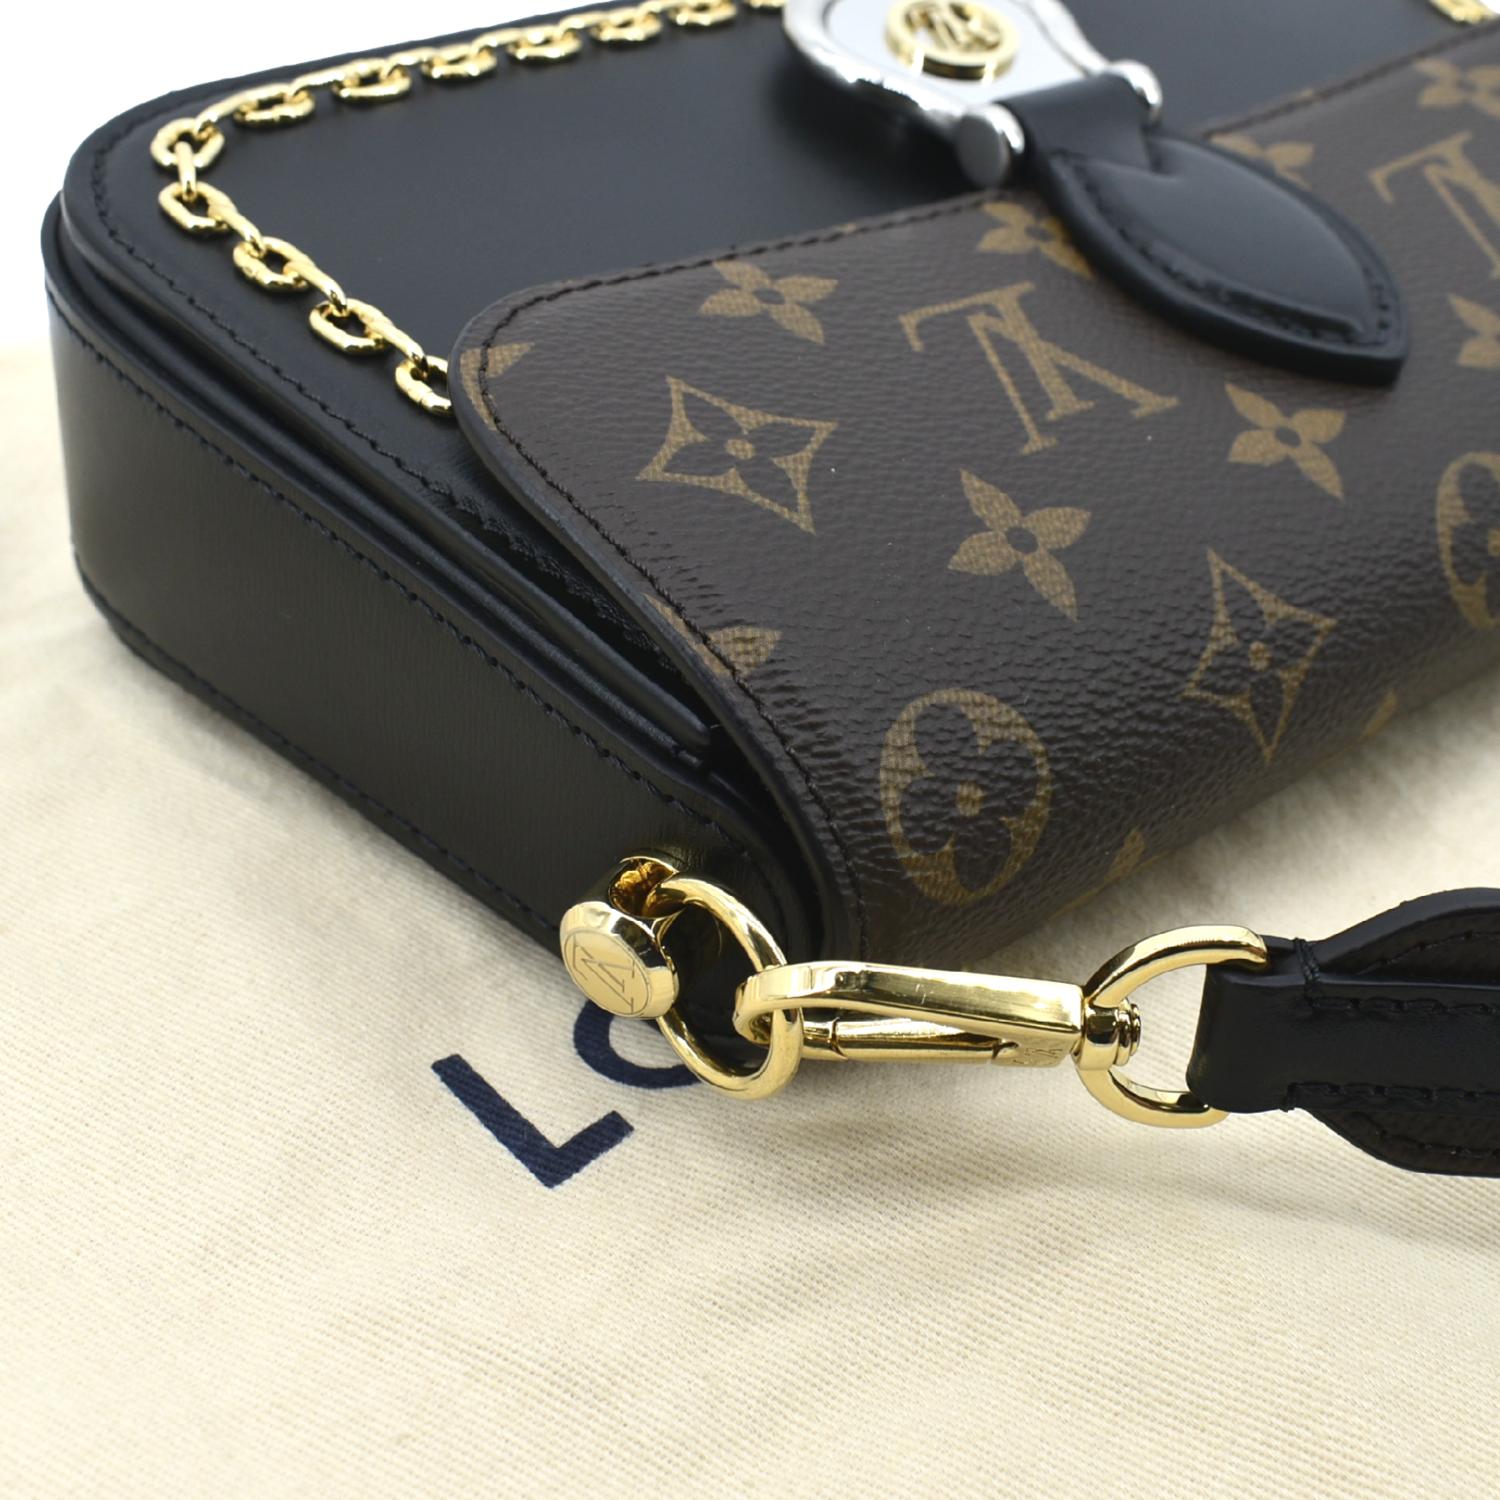 Louis Vuitton NEO SAINT CLOUD bag, Louis vuitton handbags, louis vuitton  bags, louis vuitton out 